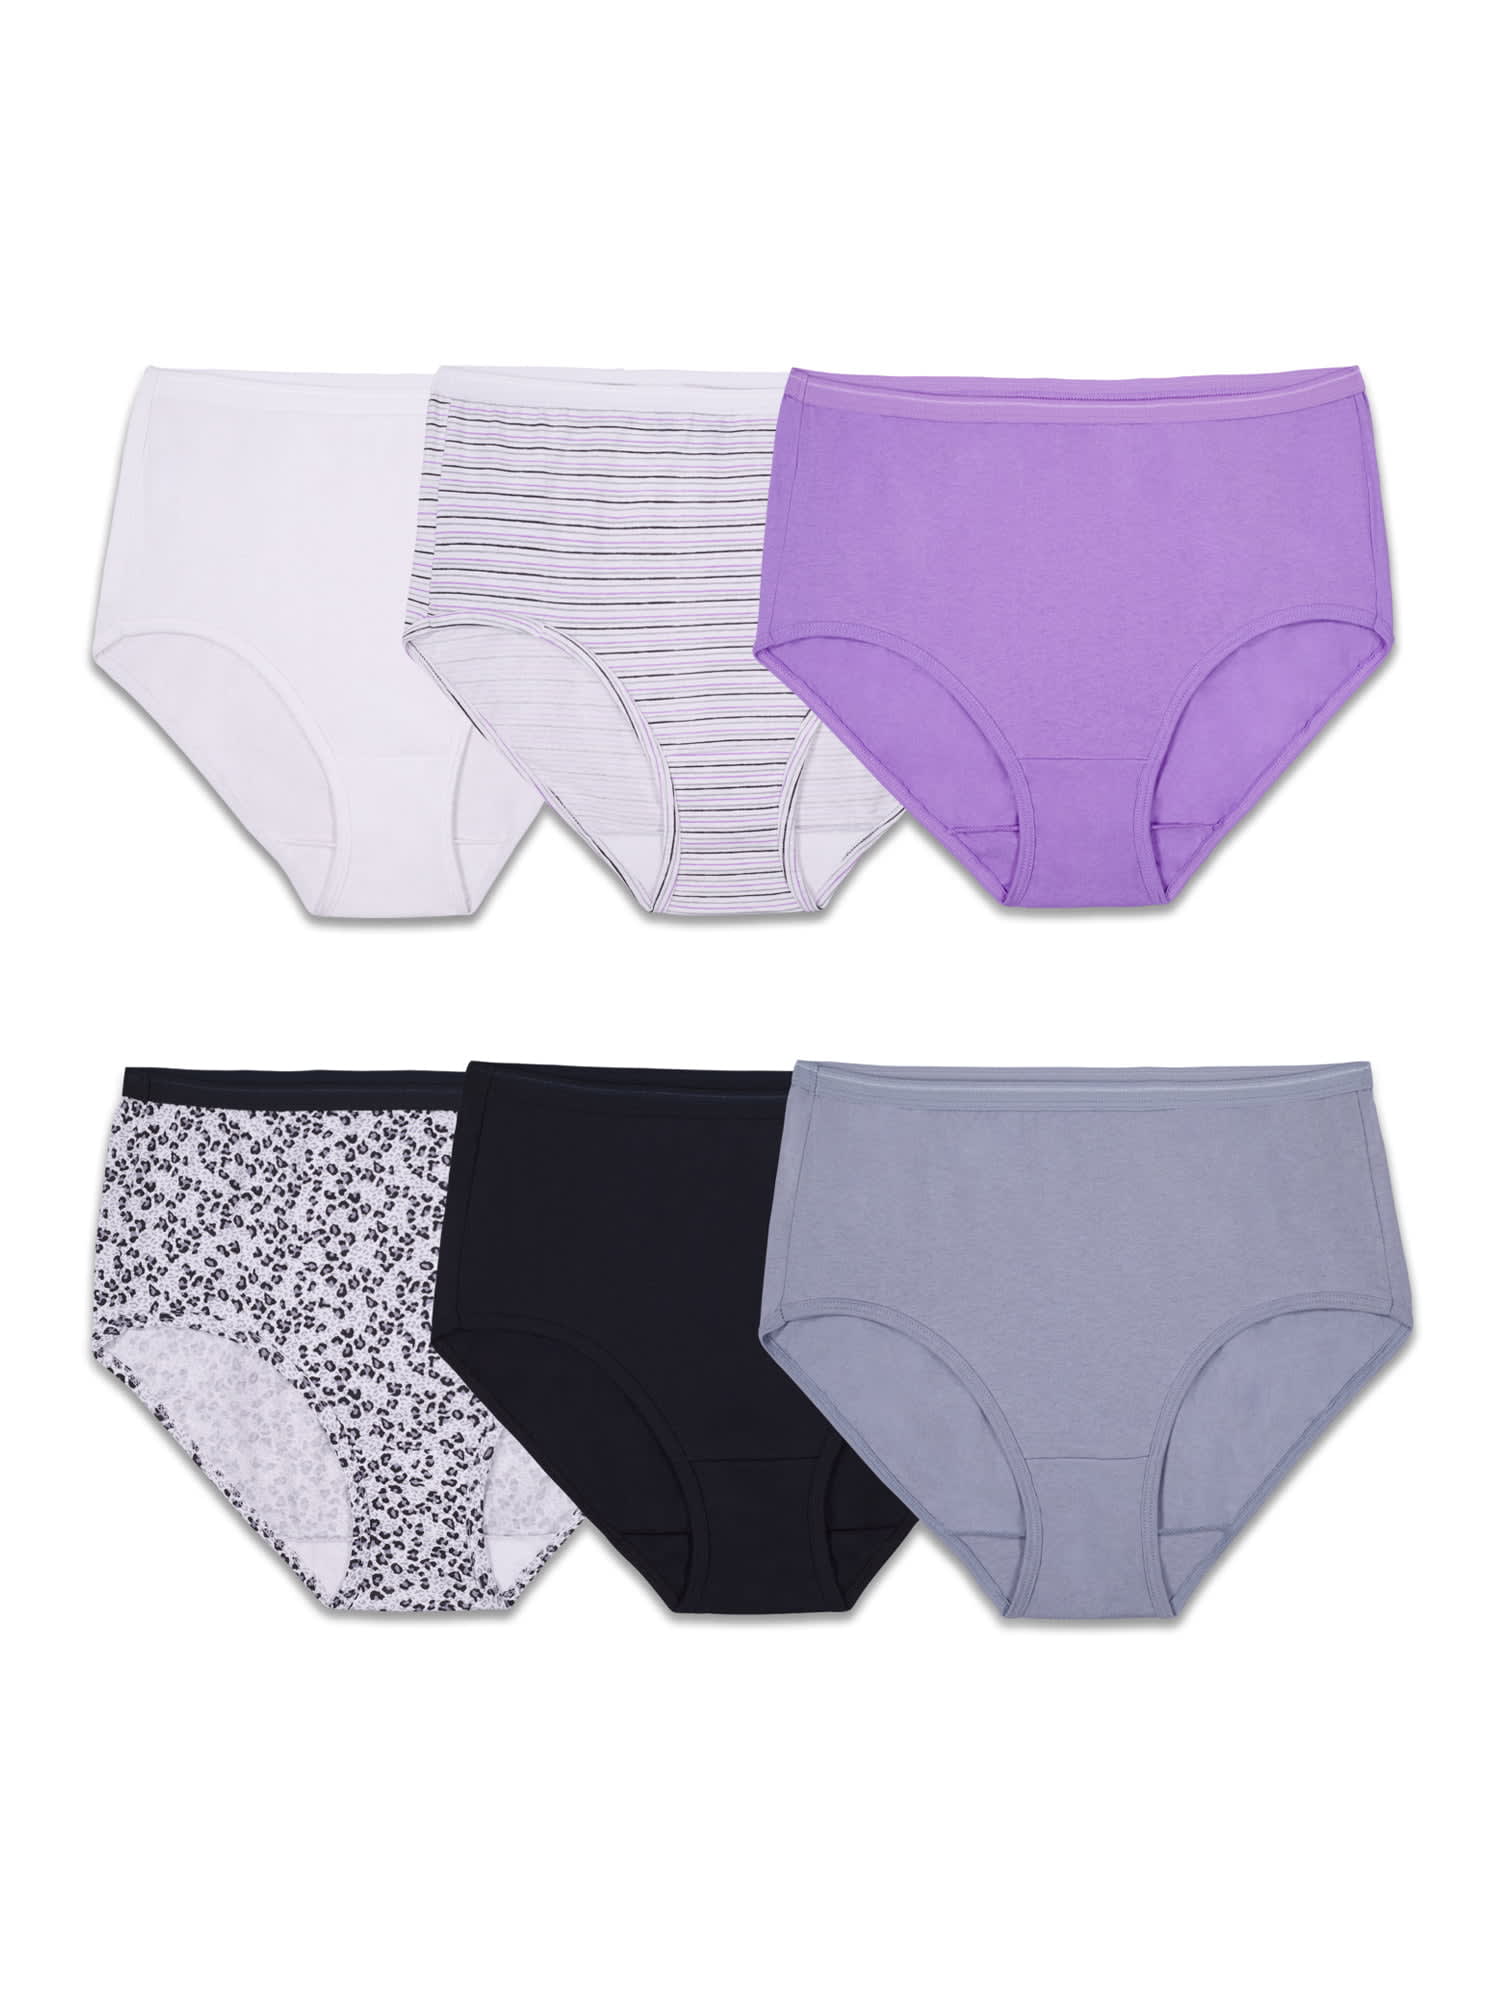 Hanes Women's Cotton Hi-Cut Underwear, 6-Pack